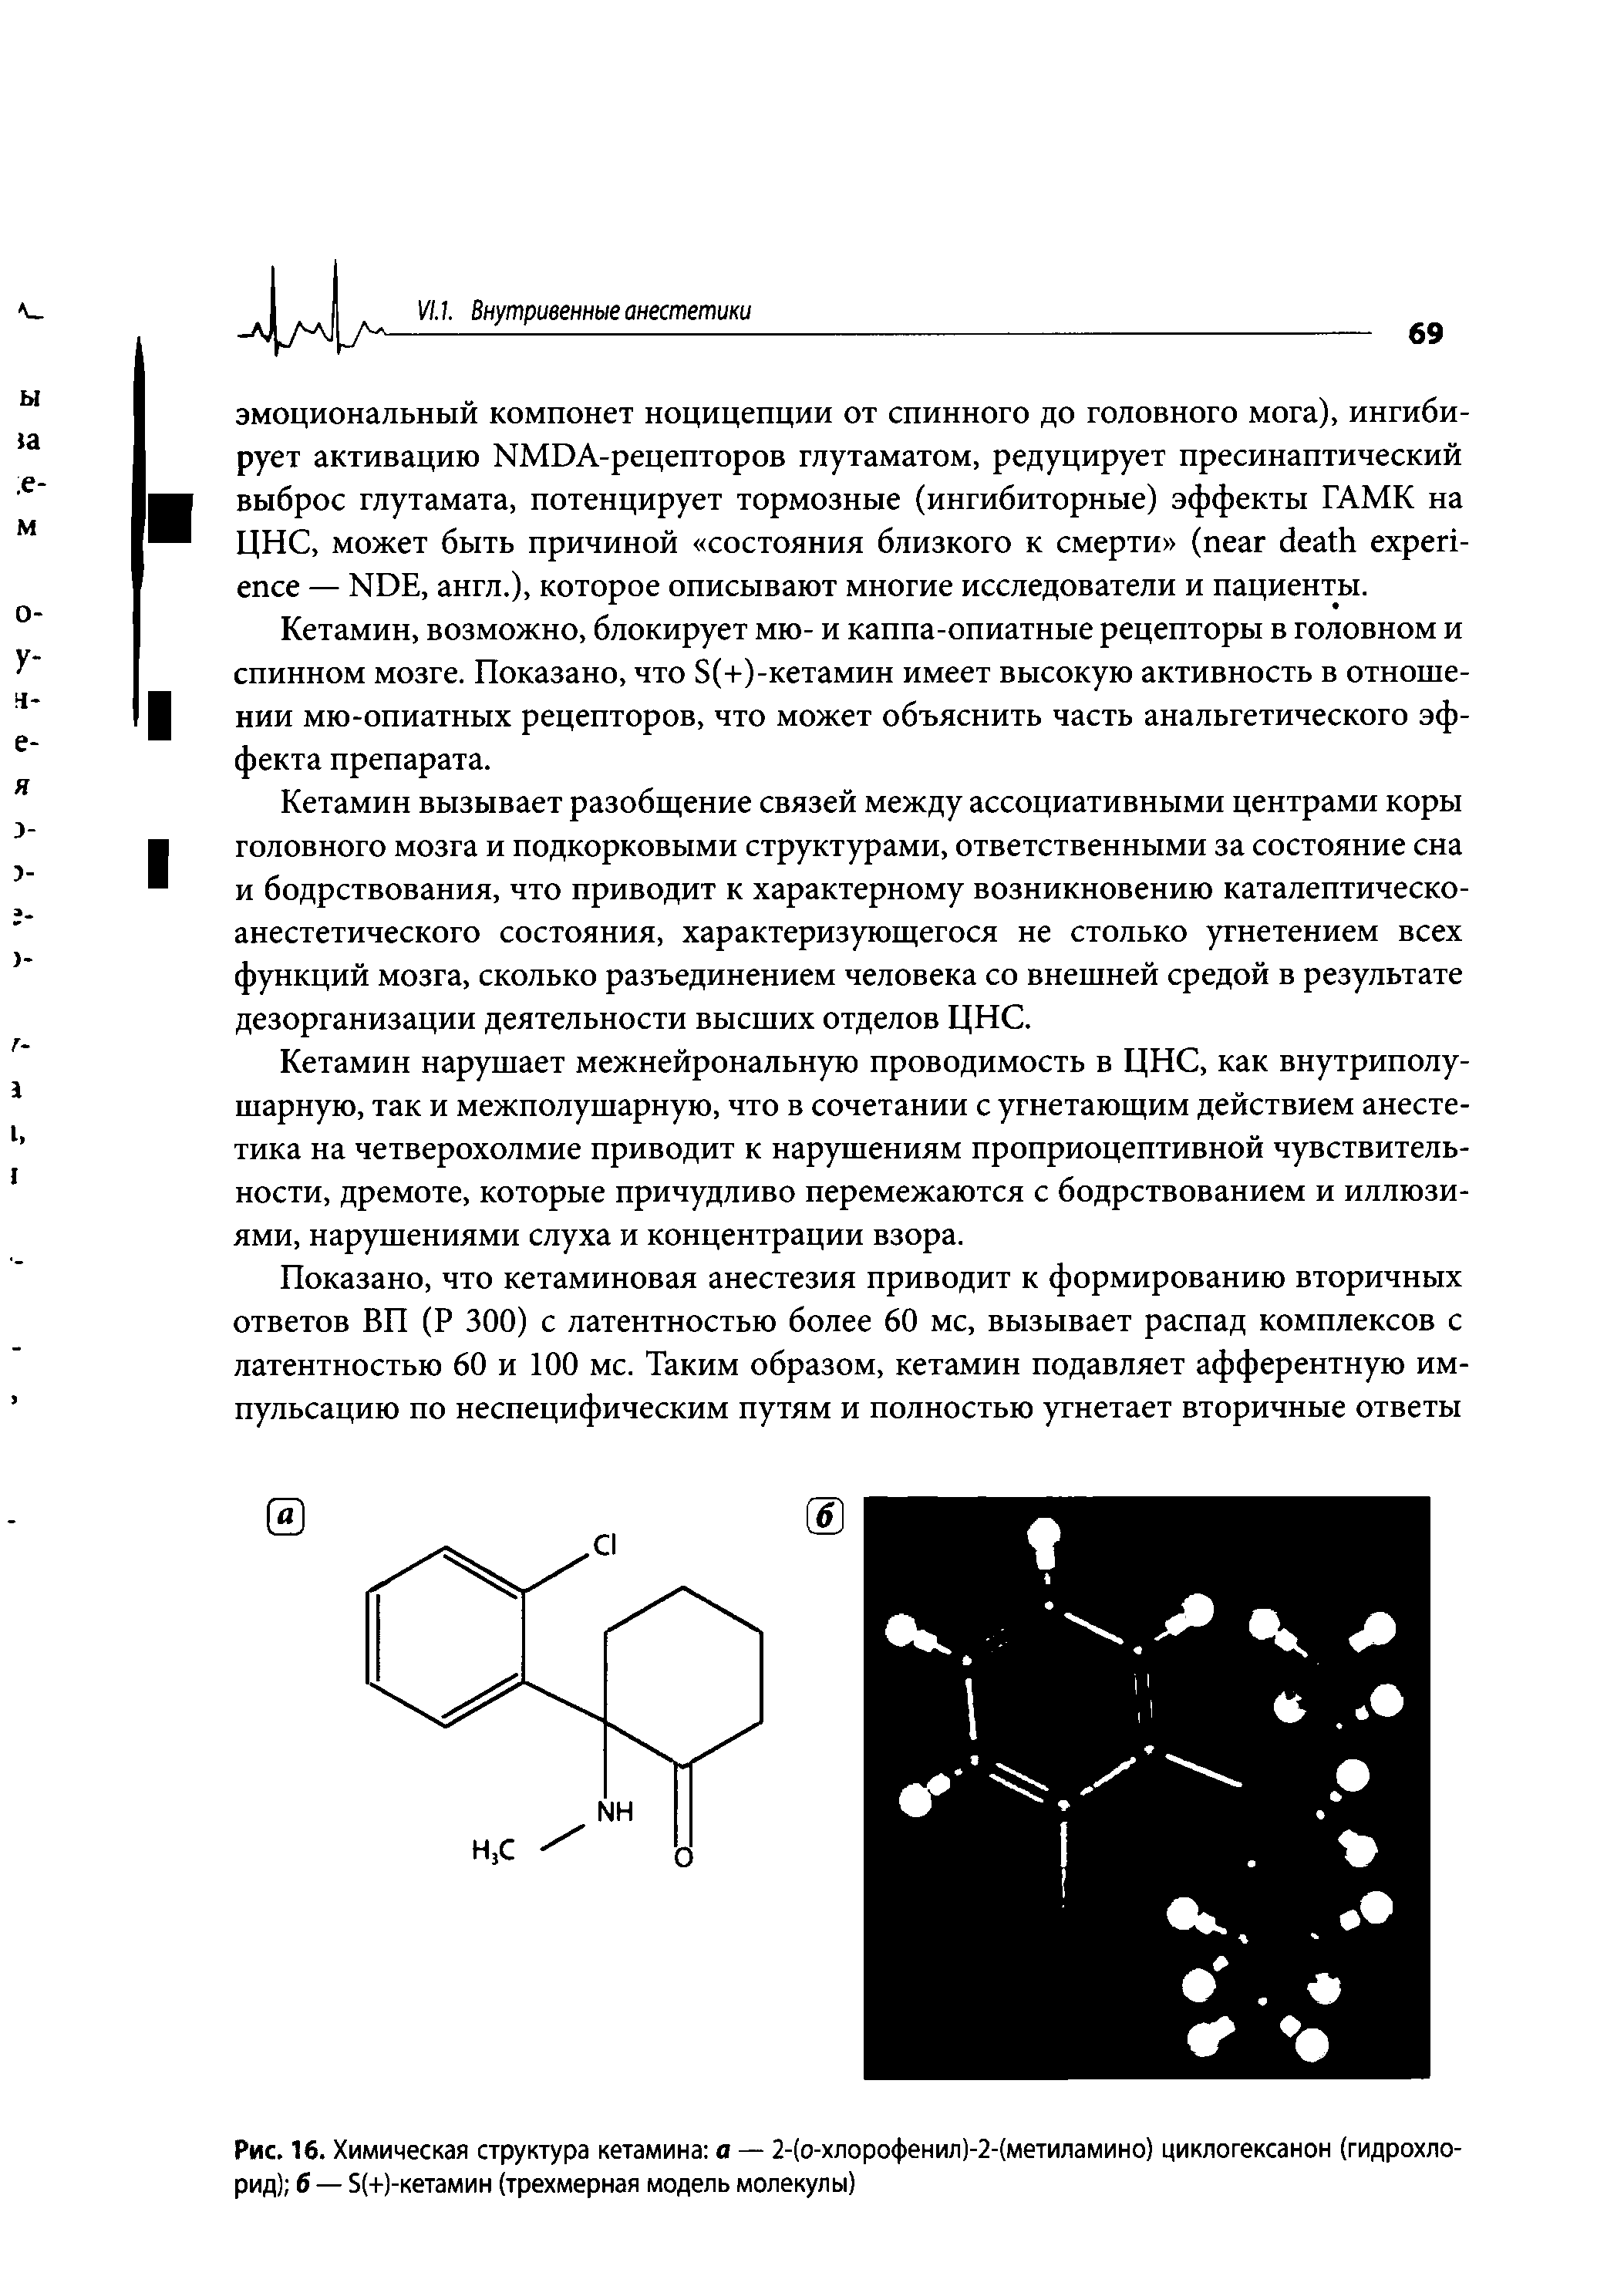 Рис. 16. Химическая структура кетамина а — 2-(о-хлорофенил)-2-(метиламино) циклогексанон (гидрохлорид) б — 5(+)-кетамин (трехмерная модель молекулы)...